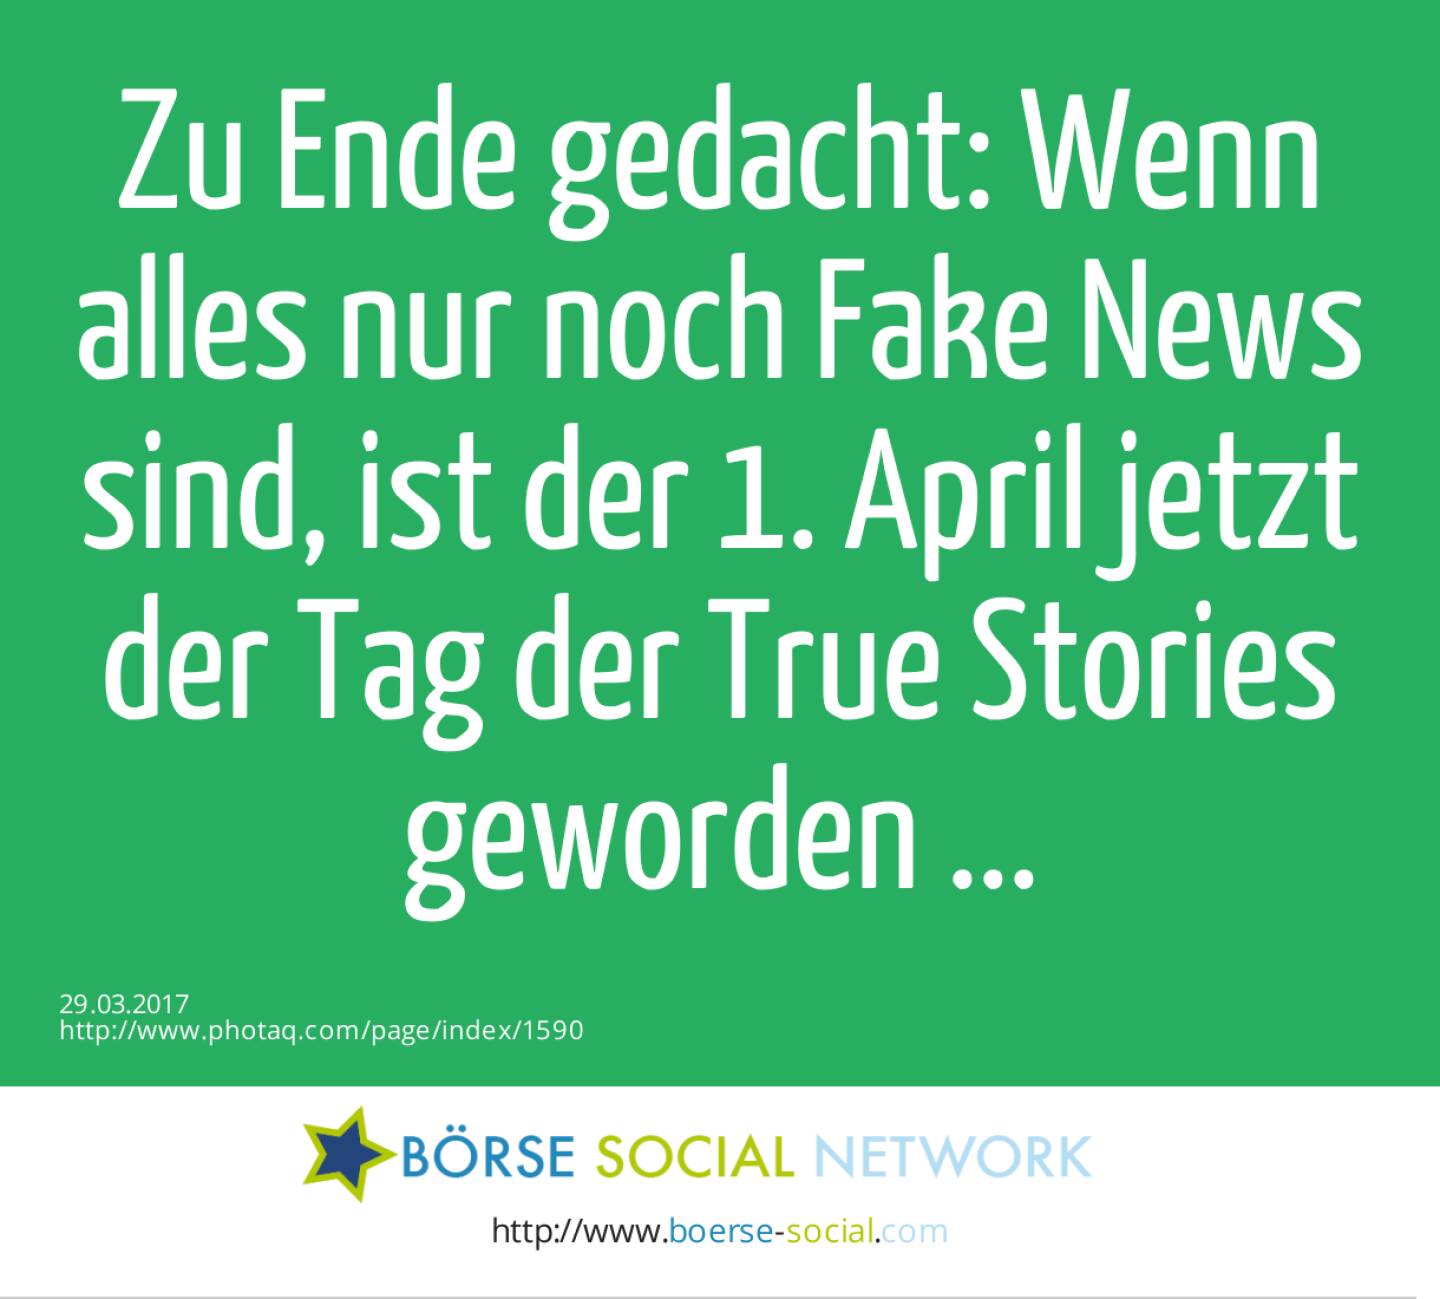 Zu Ende gedacht: Wenn alles nur noch Fake News sind, ist der 1. April jetzt der Tag der True Stories geworden ... 